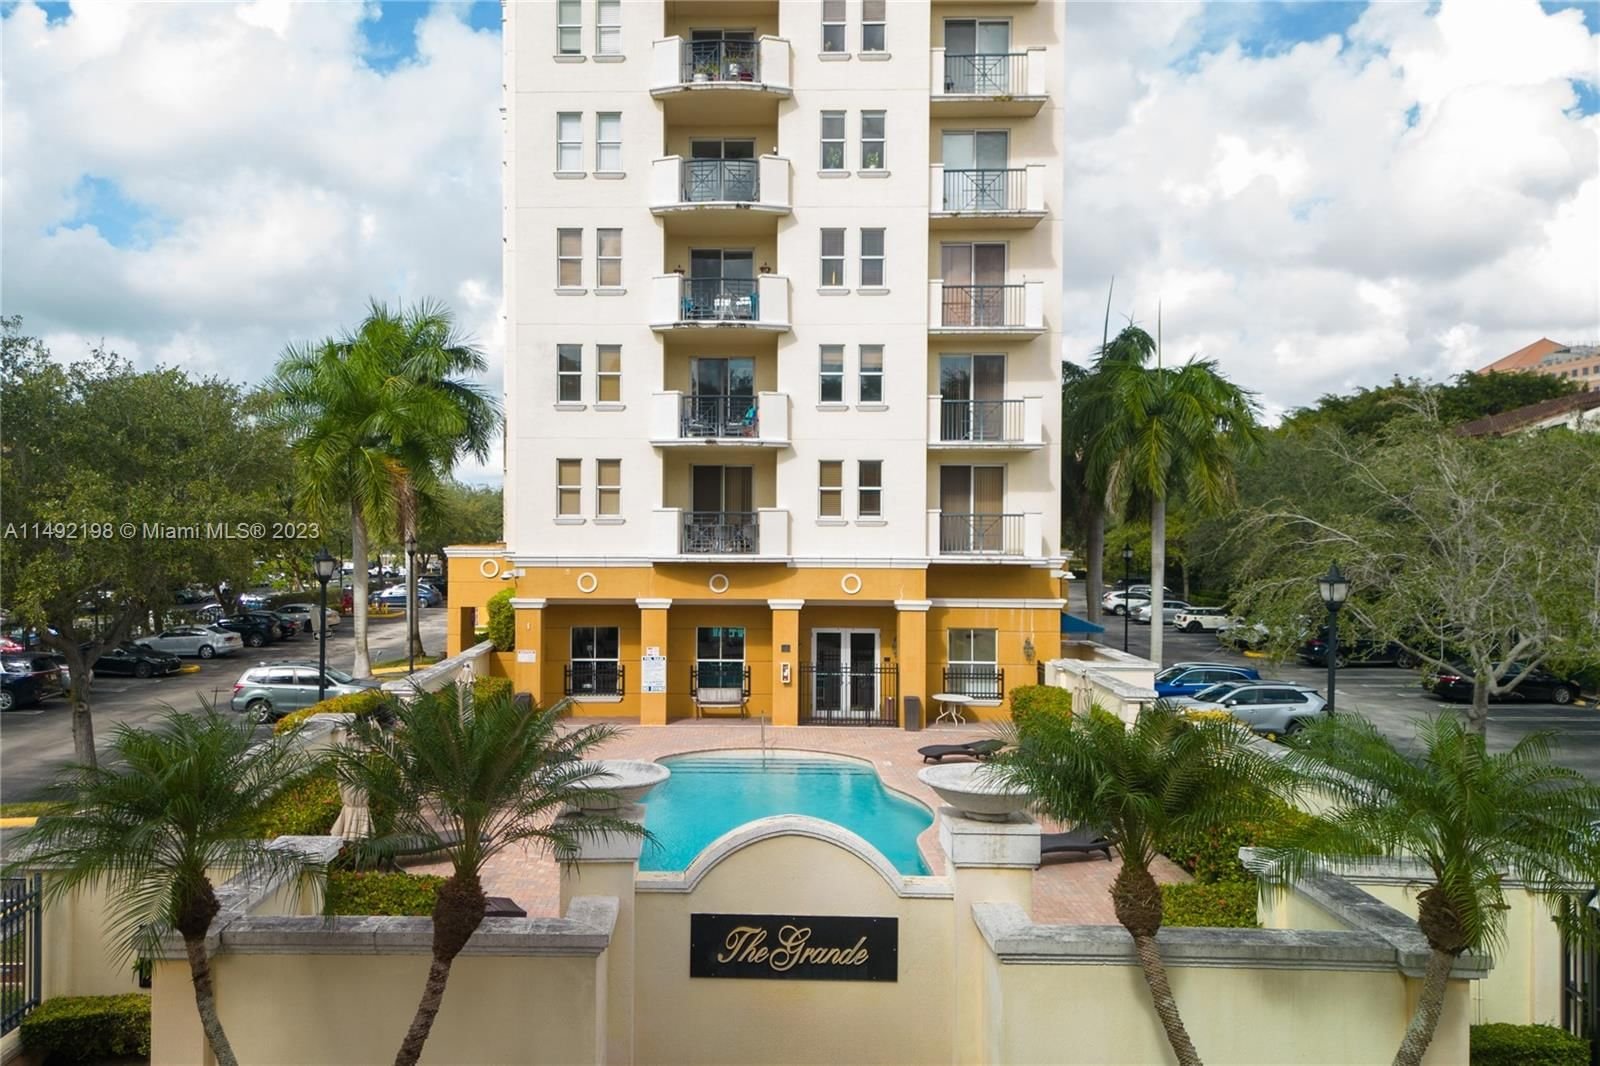 Real estate property located at 9021 94th St #304, Miami-Dade County, THE GRANDE CONDO, Miami, FL